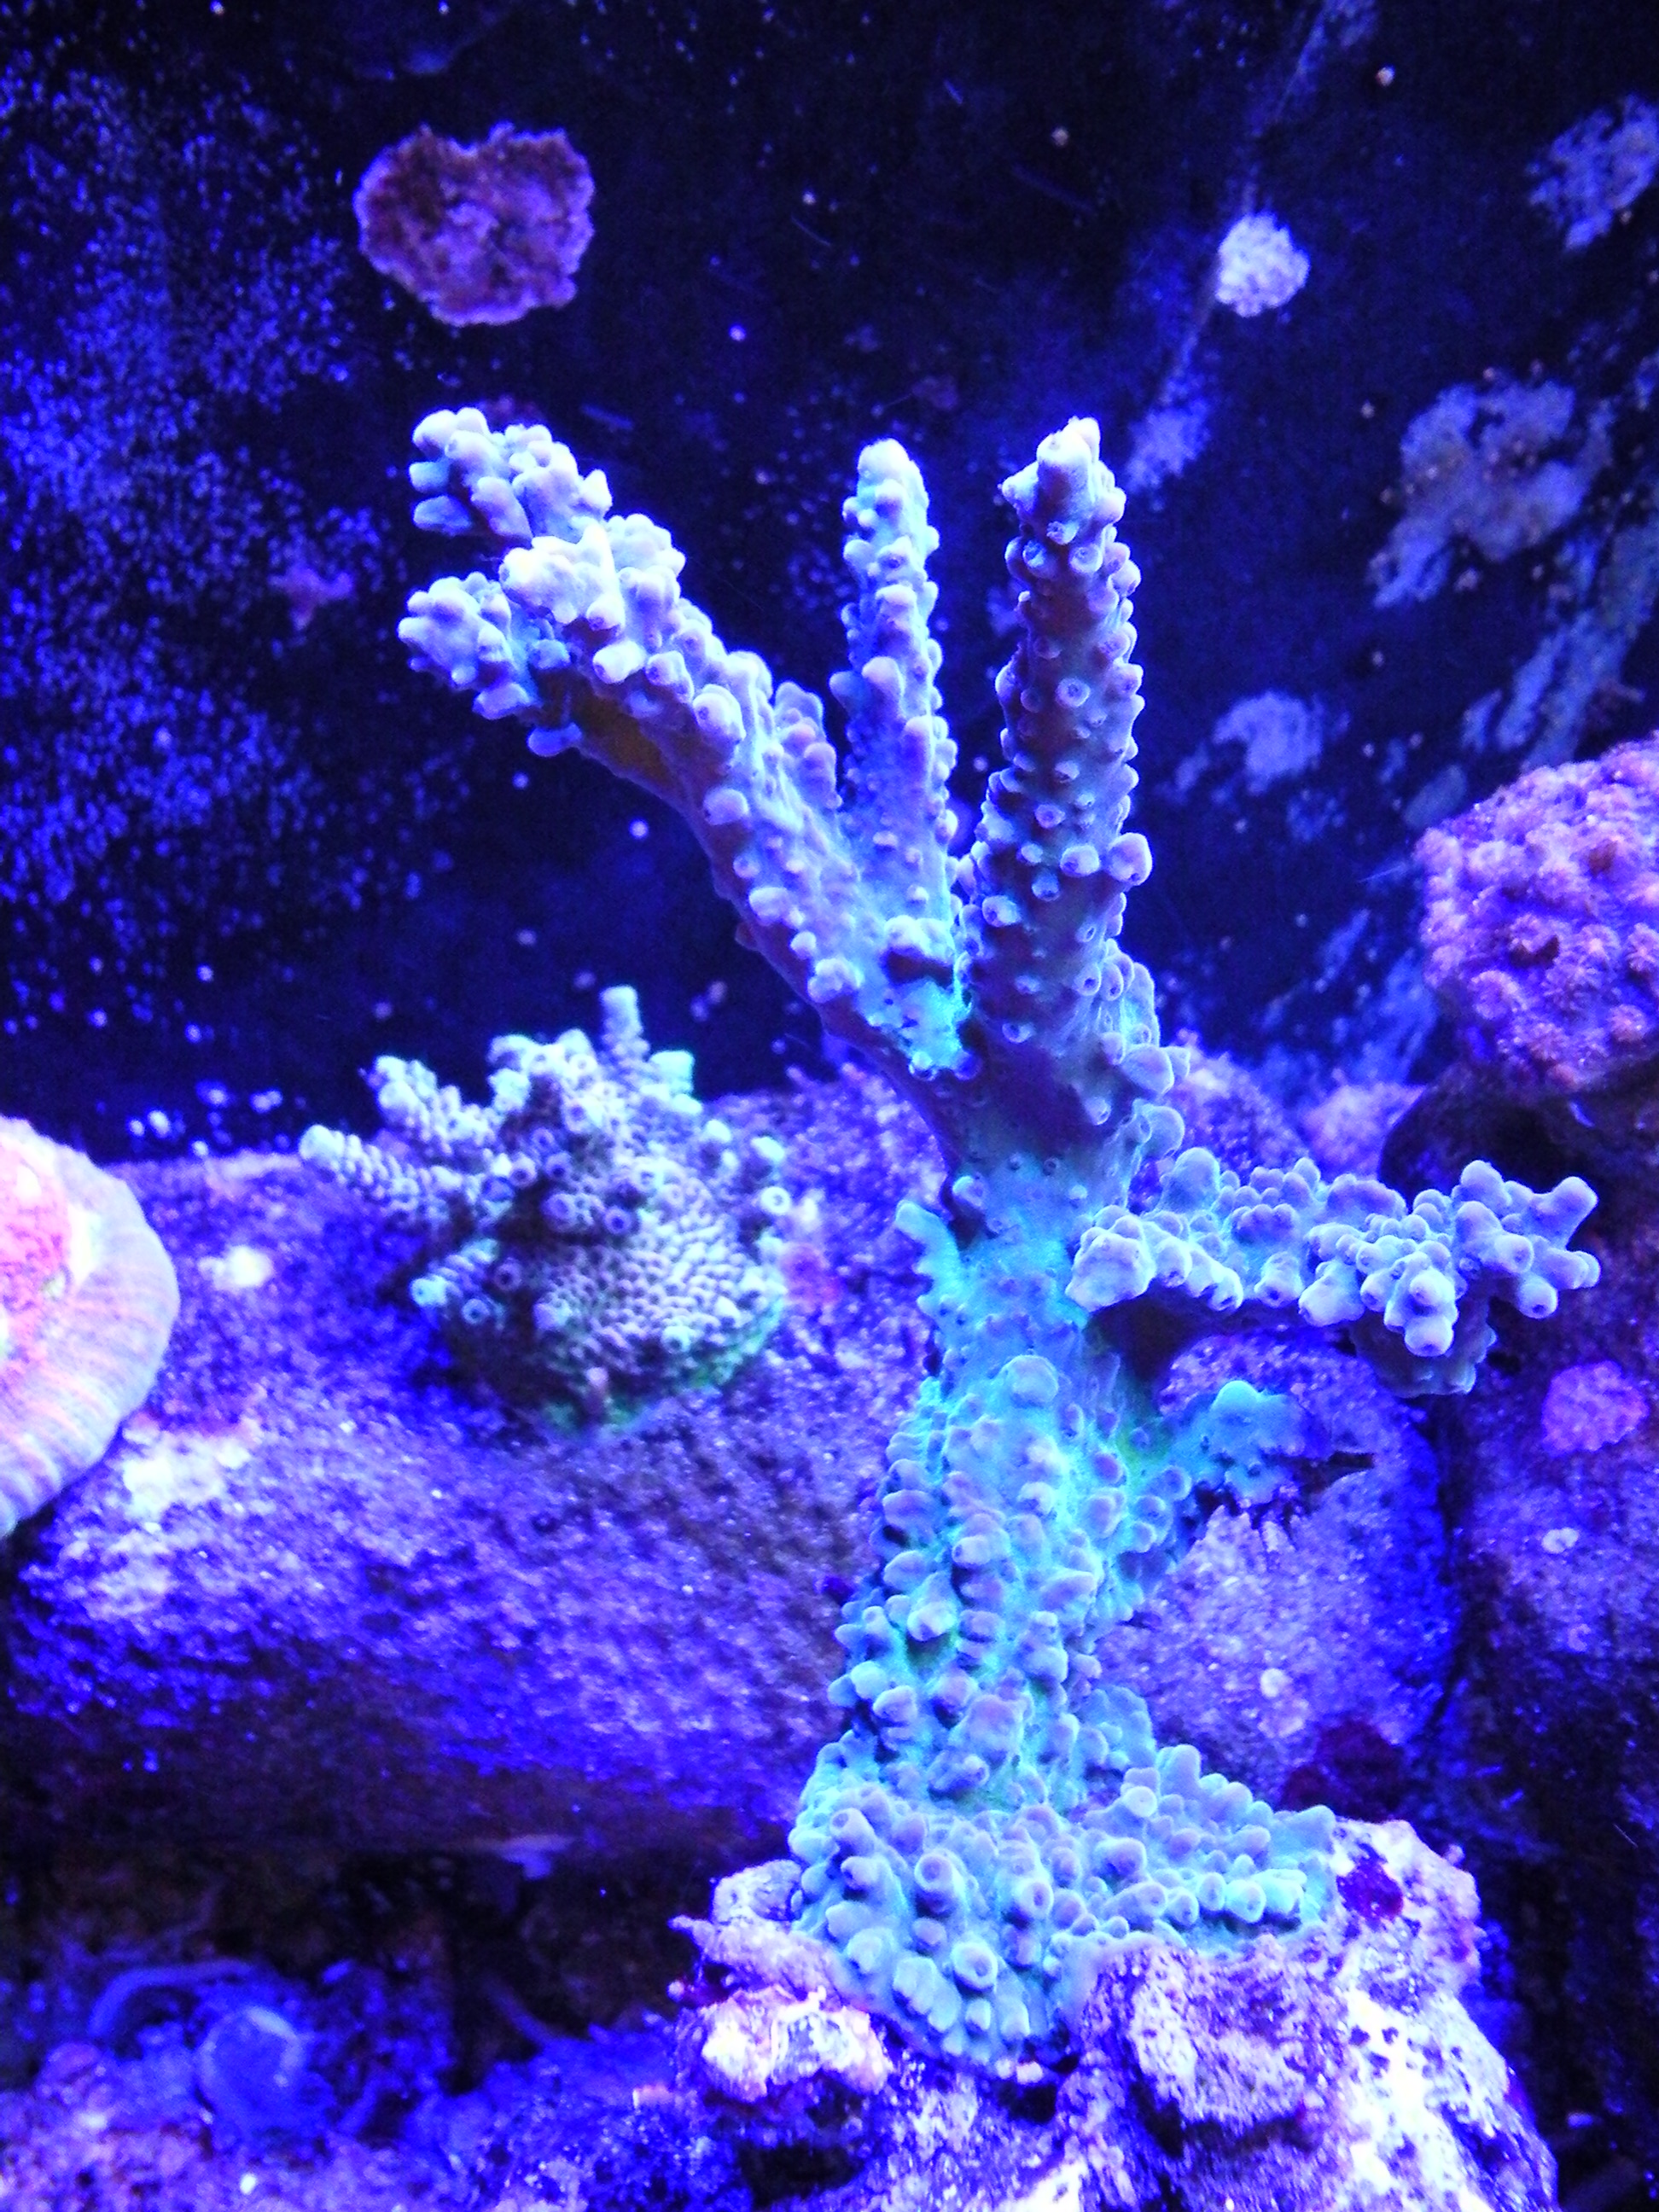 Underwater Camera in my Aquarium